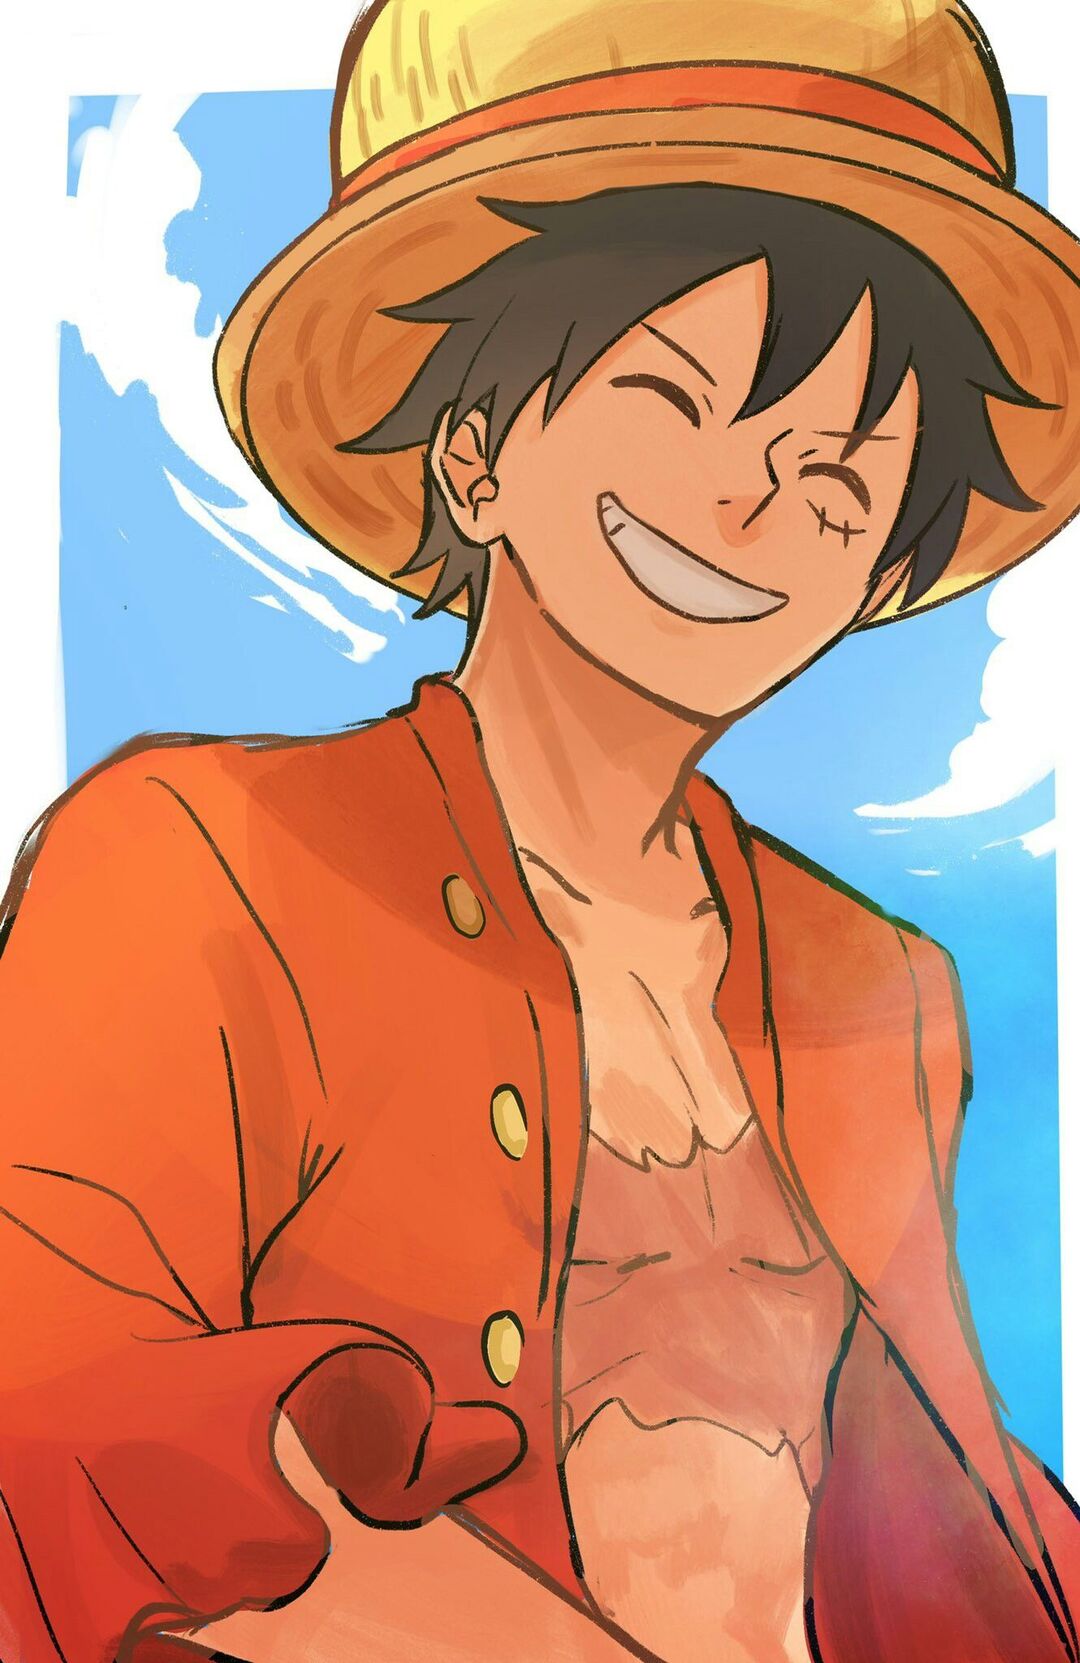 Luffy mũ rơm được biết đến là một chiến binh mạnh mẽ trong One Piece. Hình ảnh của anh ta với chiếc mũ đặc trưng sẽ khiến bạn muốn biết thêm về cuộc phiêu lưu của anh ta trên Đảo Hải Tặc.